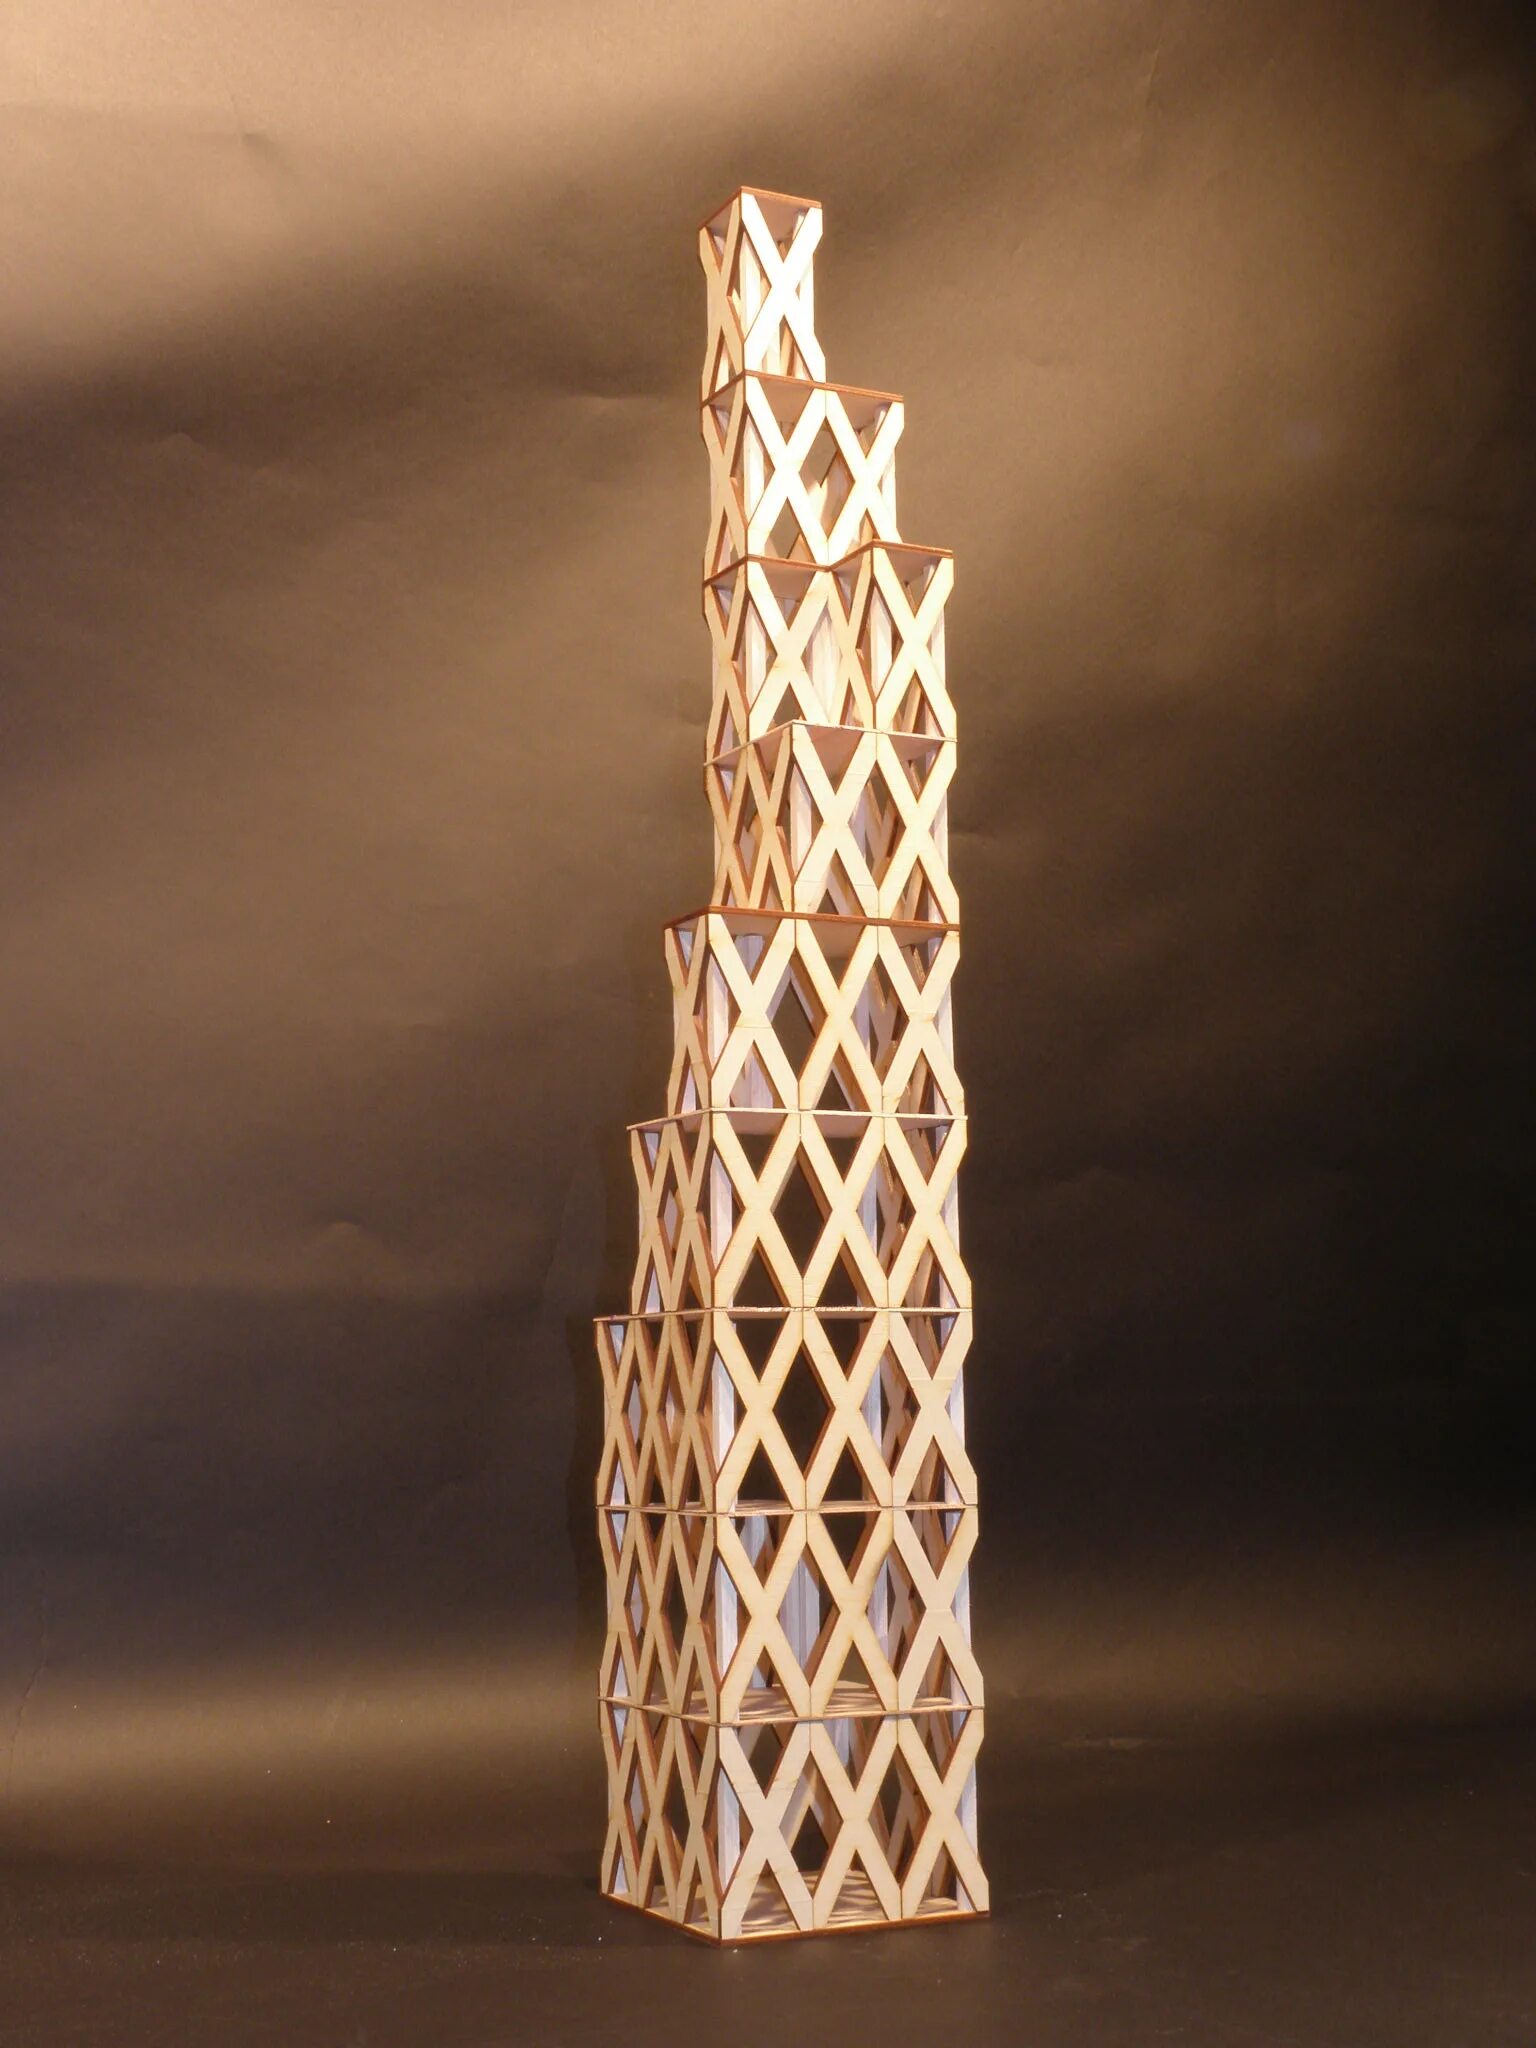 Башня из деревяшек. Башня из дерева. Башни из деревянных брусков. Башня из деревянных палочек. Башня из палочек игра